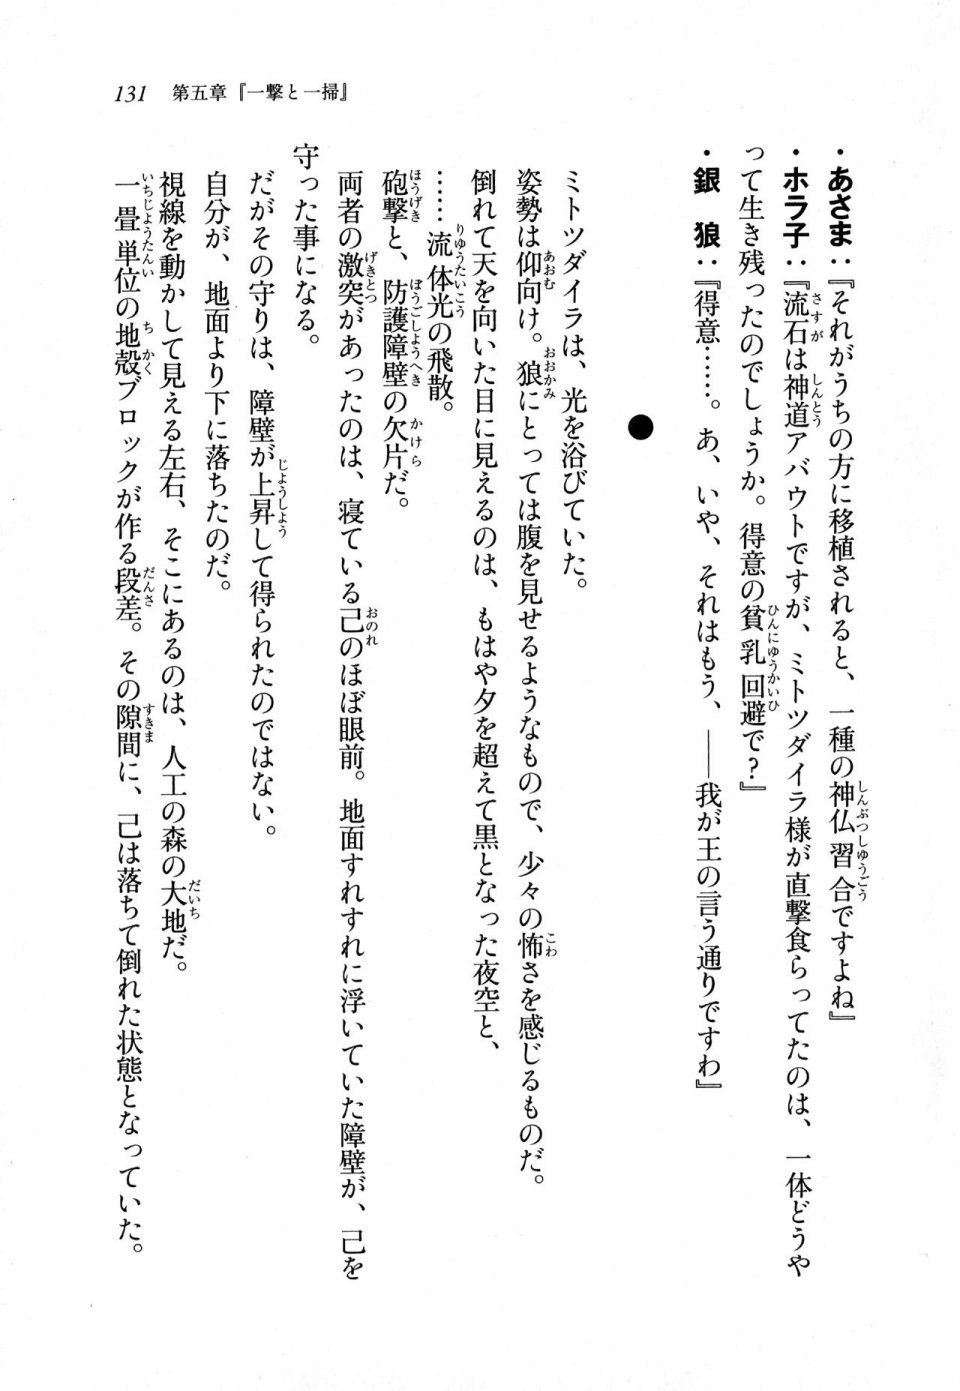 Kyoukai Senjou no Horizon LN Sidestory Vol 1 - Photo #129